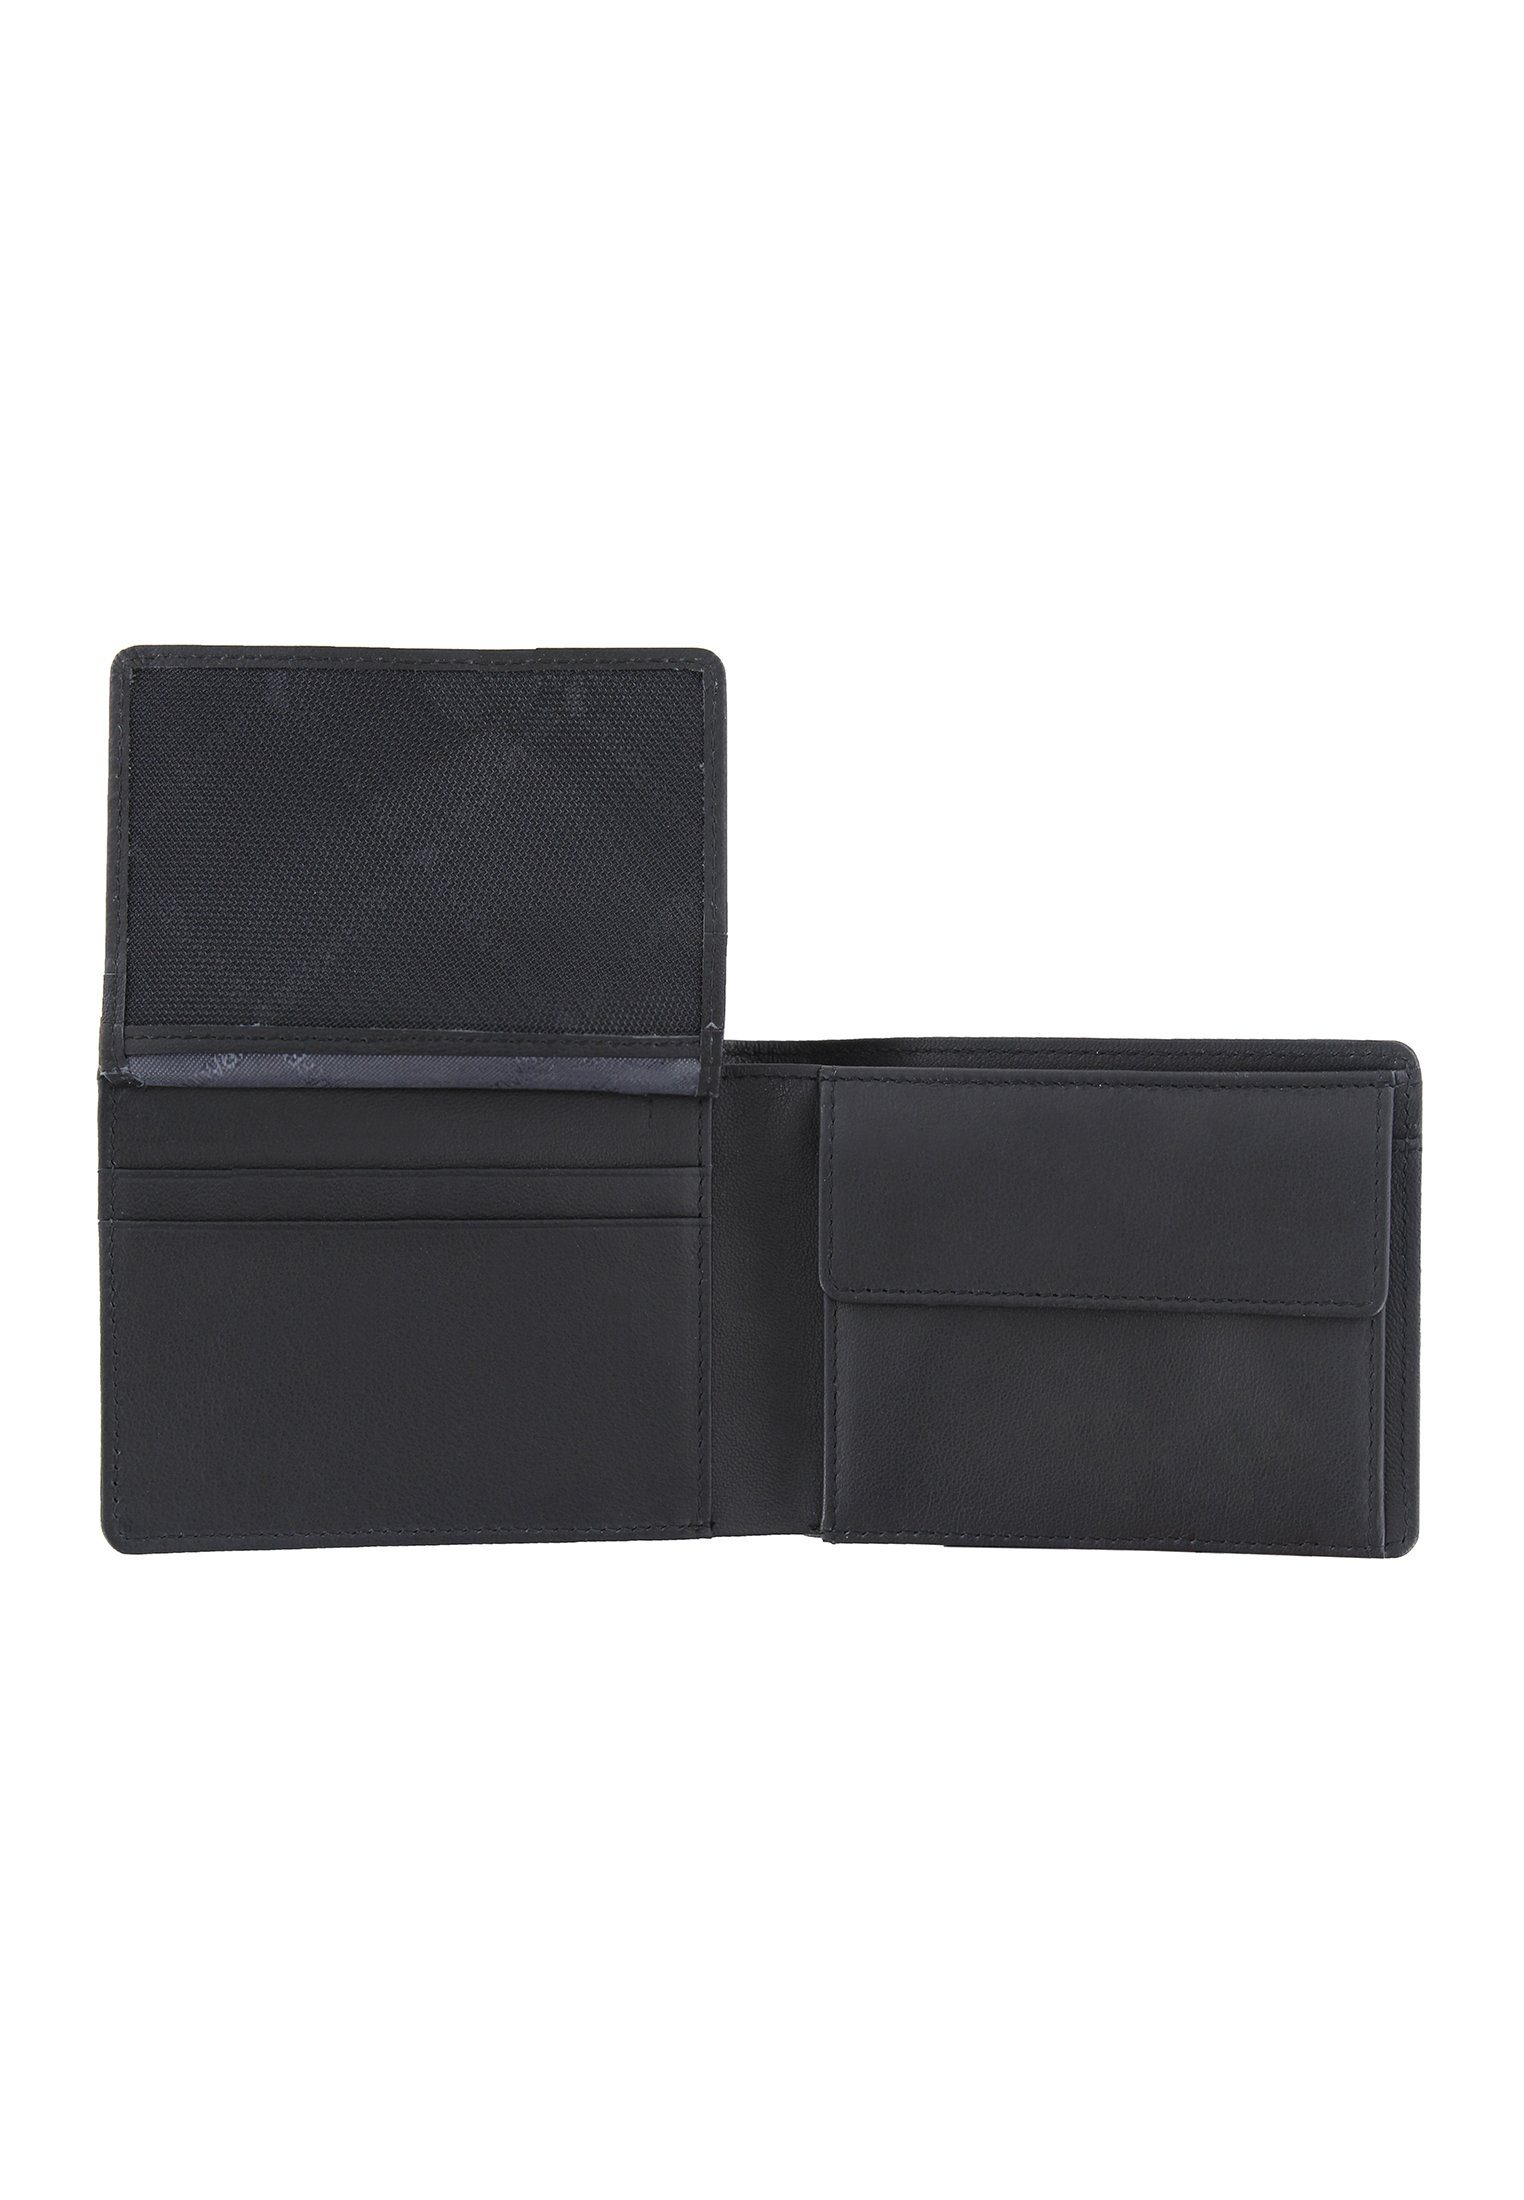 Braun Büffel kompaktem schwarz, 2.0 Geldbörse Geldbörse S 5CS Format ARIZONA in